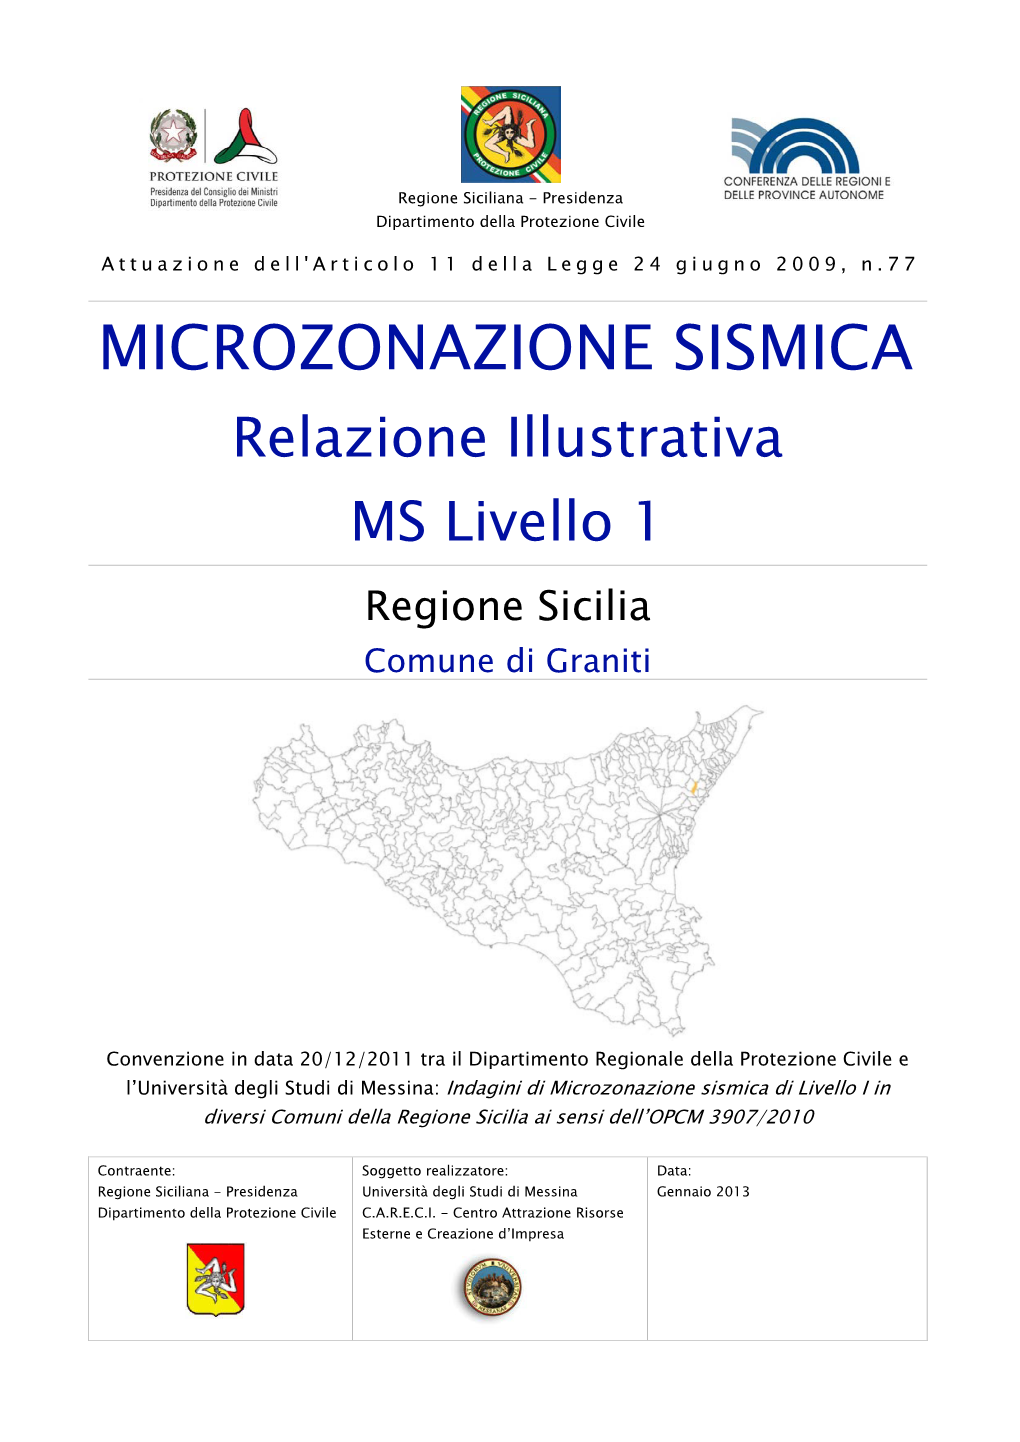 MICROZONAZIONE SISMICA Relazione Illustrativa MS Livello 1 Regione Sicilia Comune Di Graniti